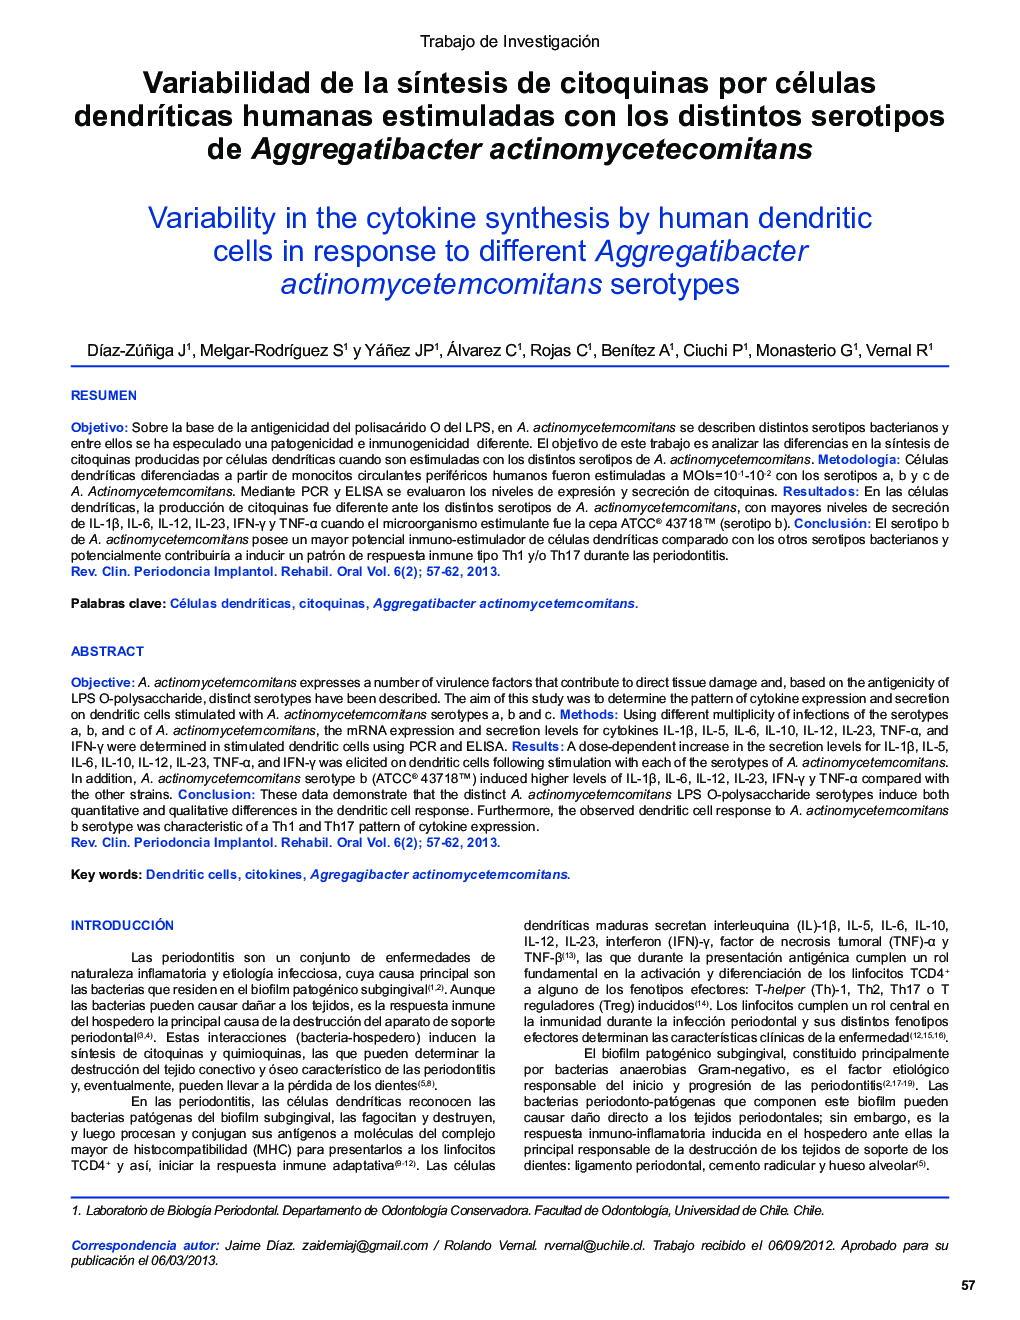 Variabilidad de la síntesis de citoquinas por células dendríticas humanas estimuladas con los distintos serotipos de Aggregatibacter actinomycetecomitans